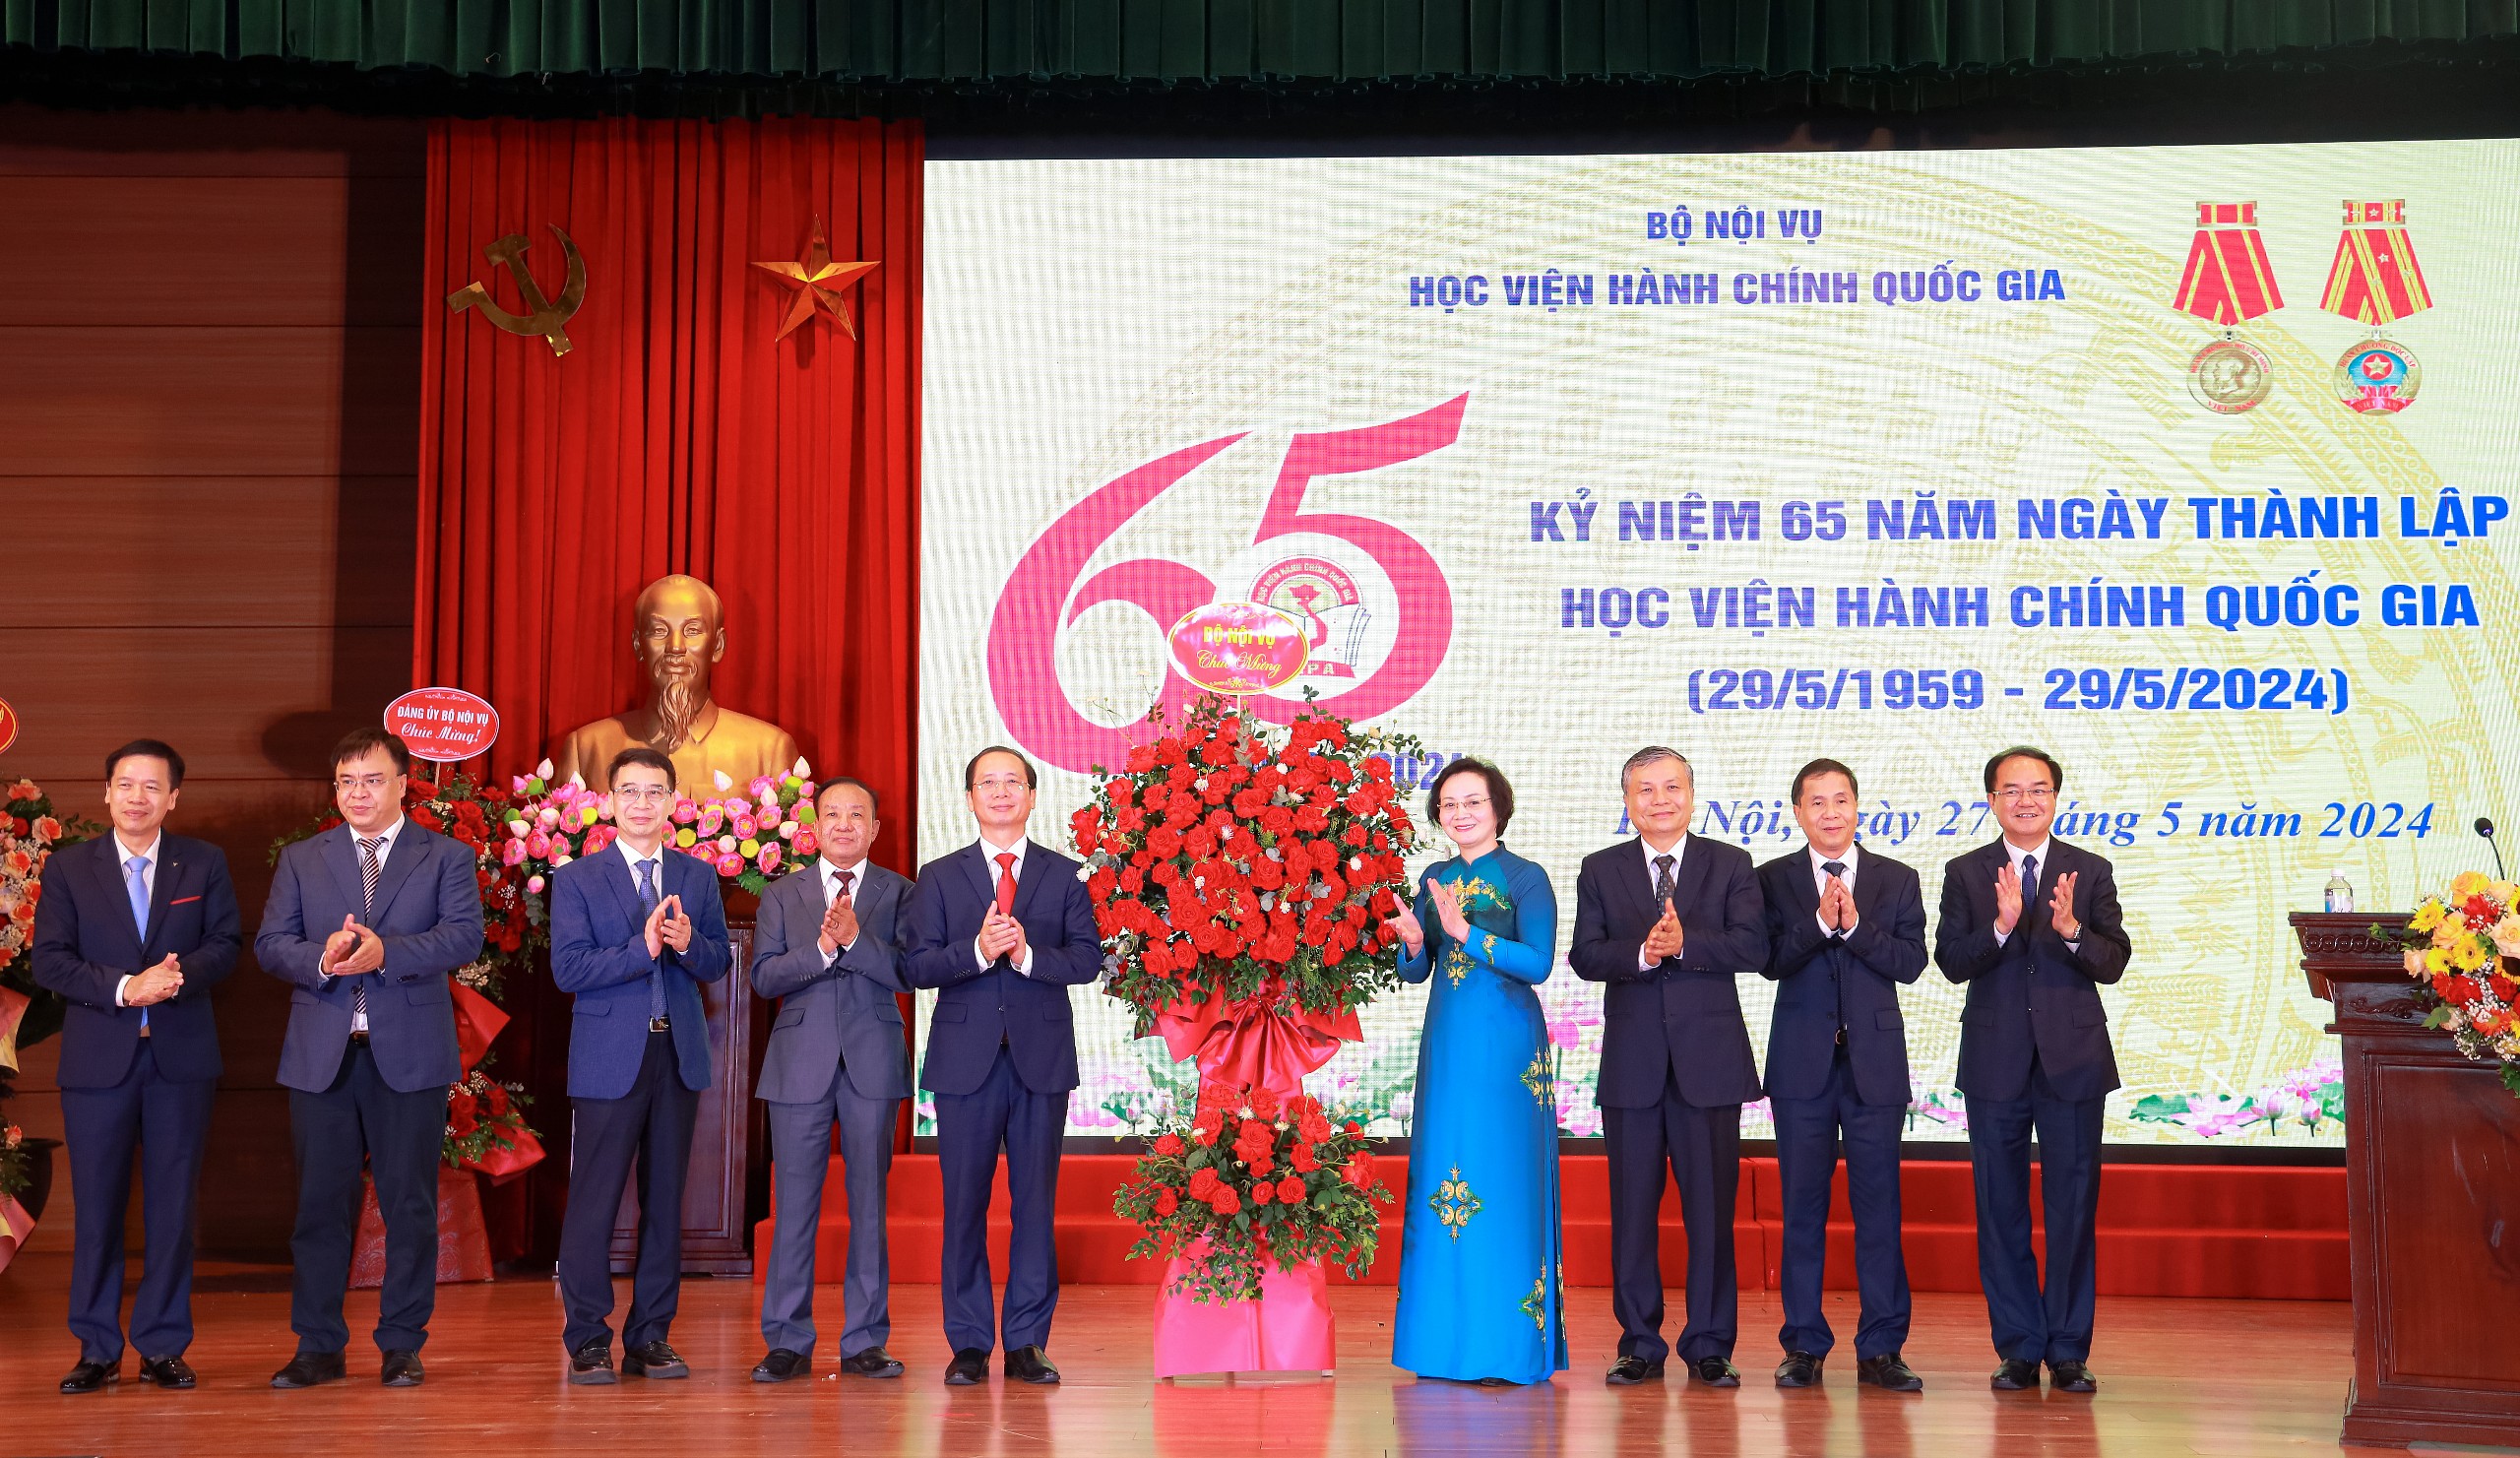 Kỷ niệm 65 năm ngày thành lập học viện hành chính quốc gia (29/5/1959 – 29/5/2024)